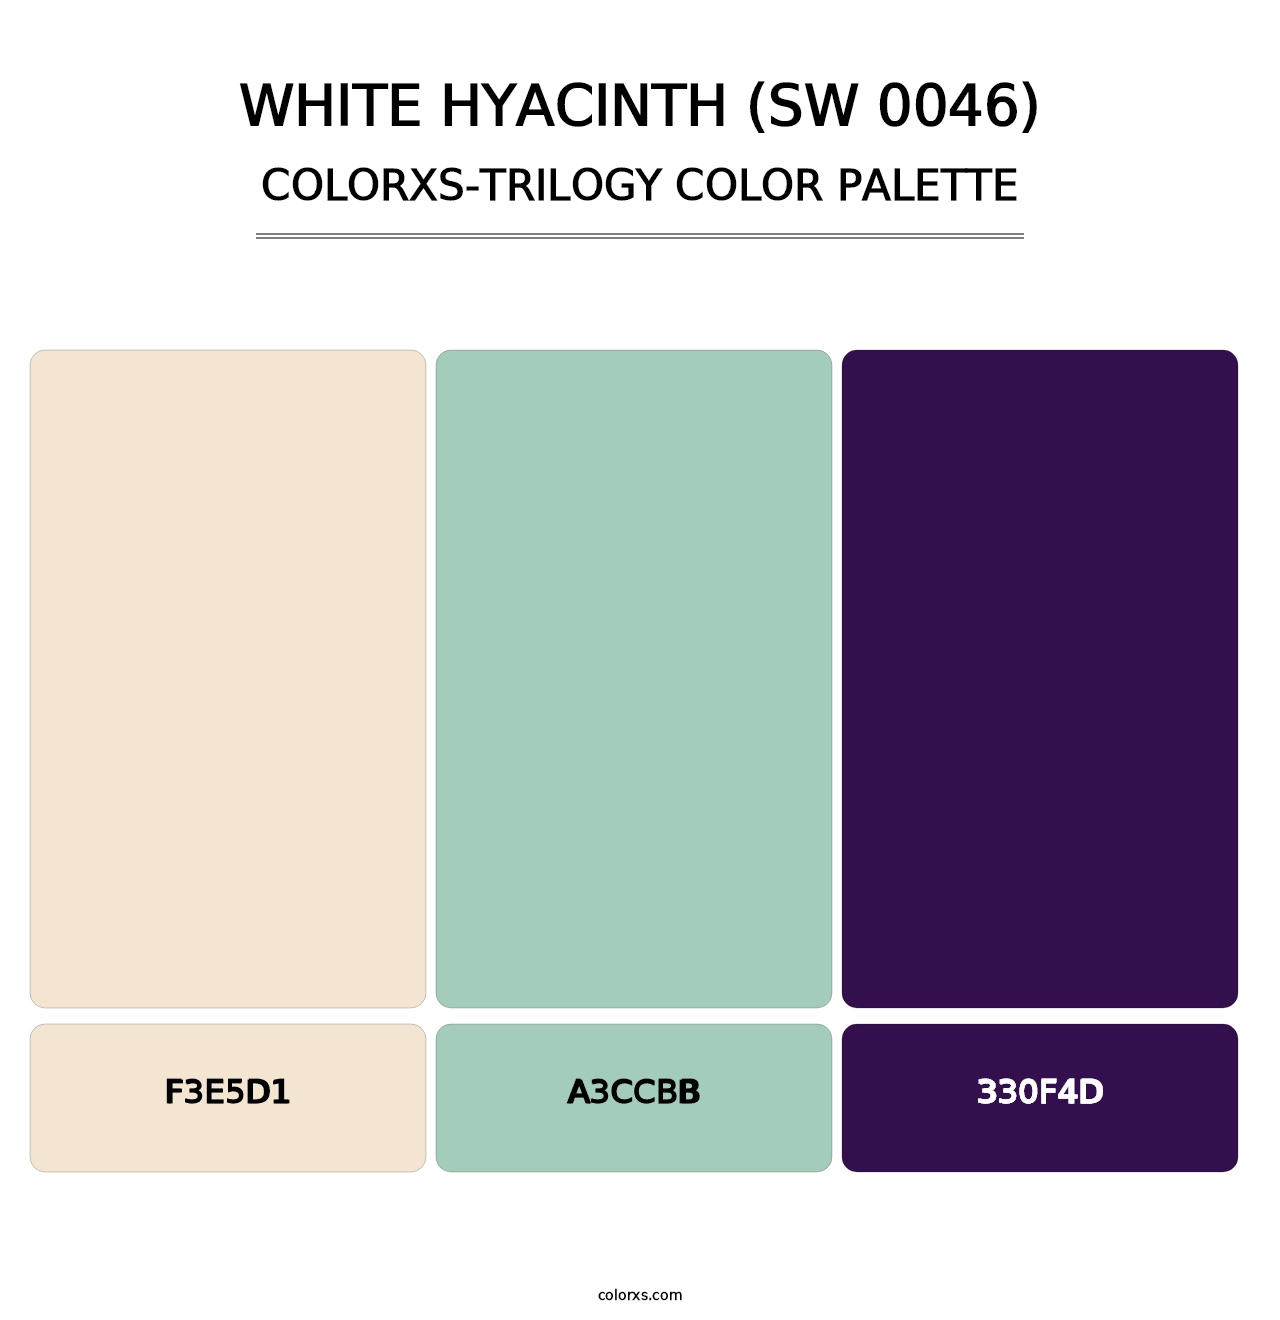 White Hyacinth (SW 0046) - Colorxs Trilogy Palette